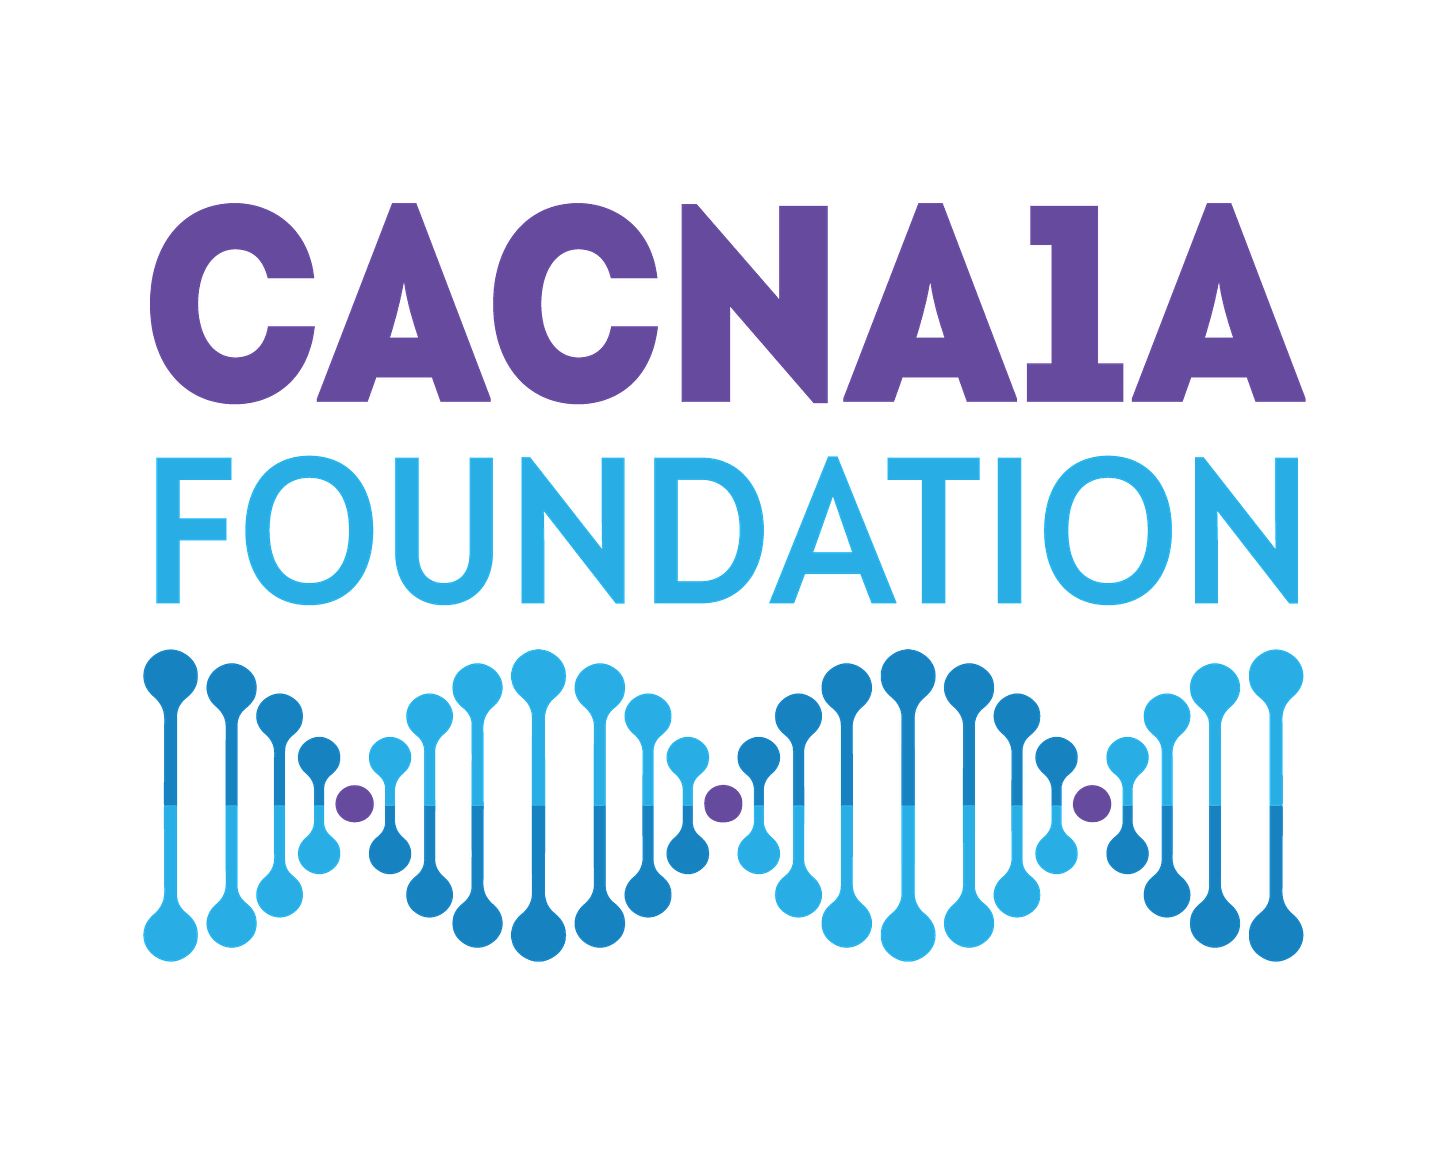 CACNA1A Foundation